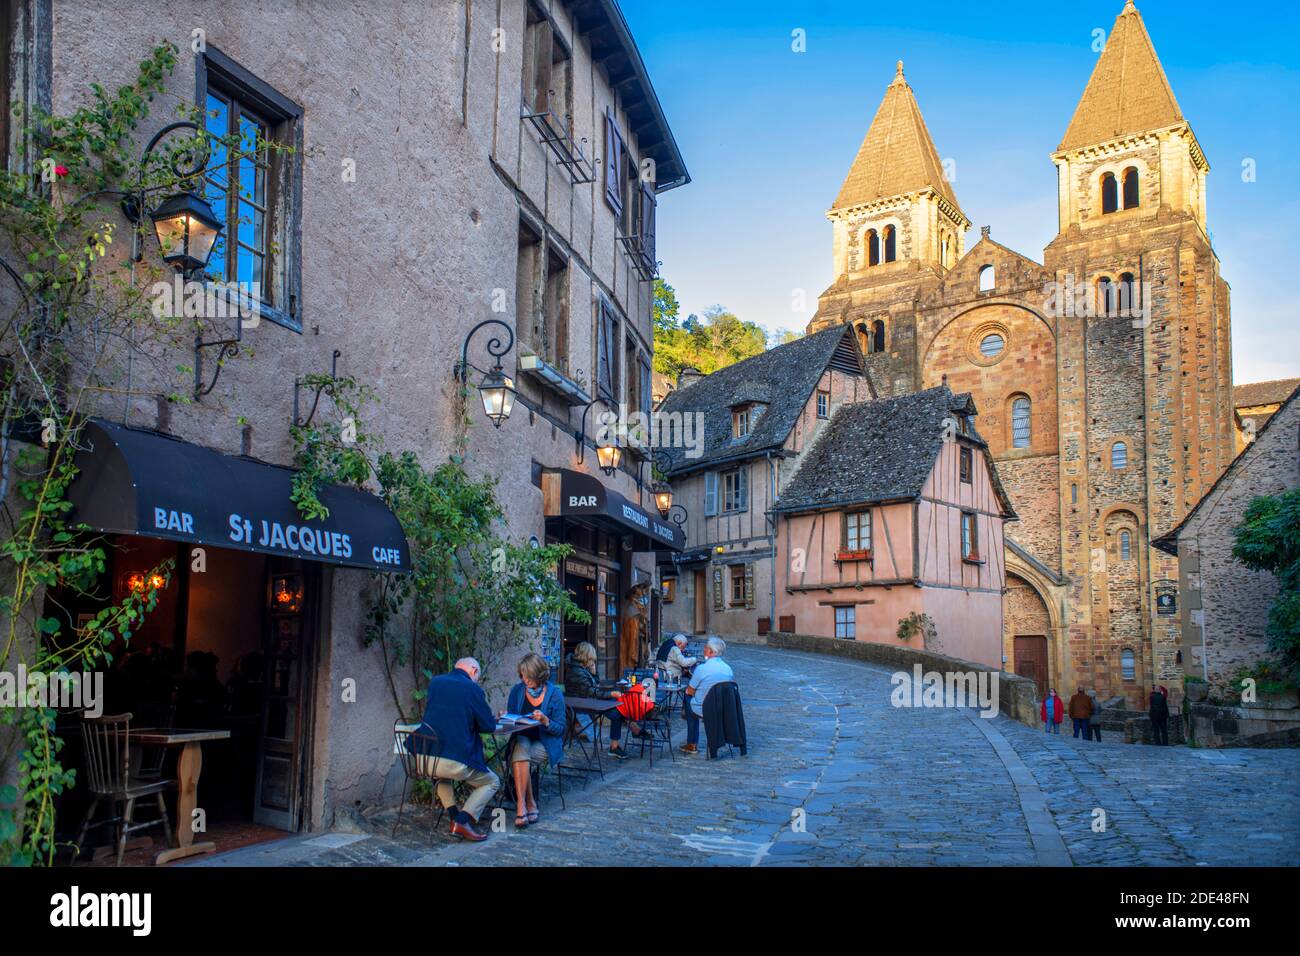 Il piccolo borgo medievale di Conques in Francia. Mostra ai visitatori la sua abbazia-chiesa e case cluster sormontate da tetti di ardesia. Attraversamento di strada stretta Foto Stock